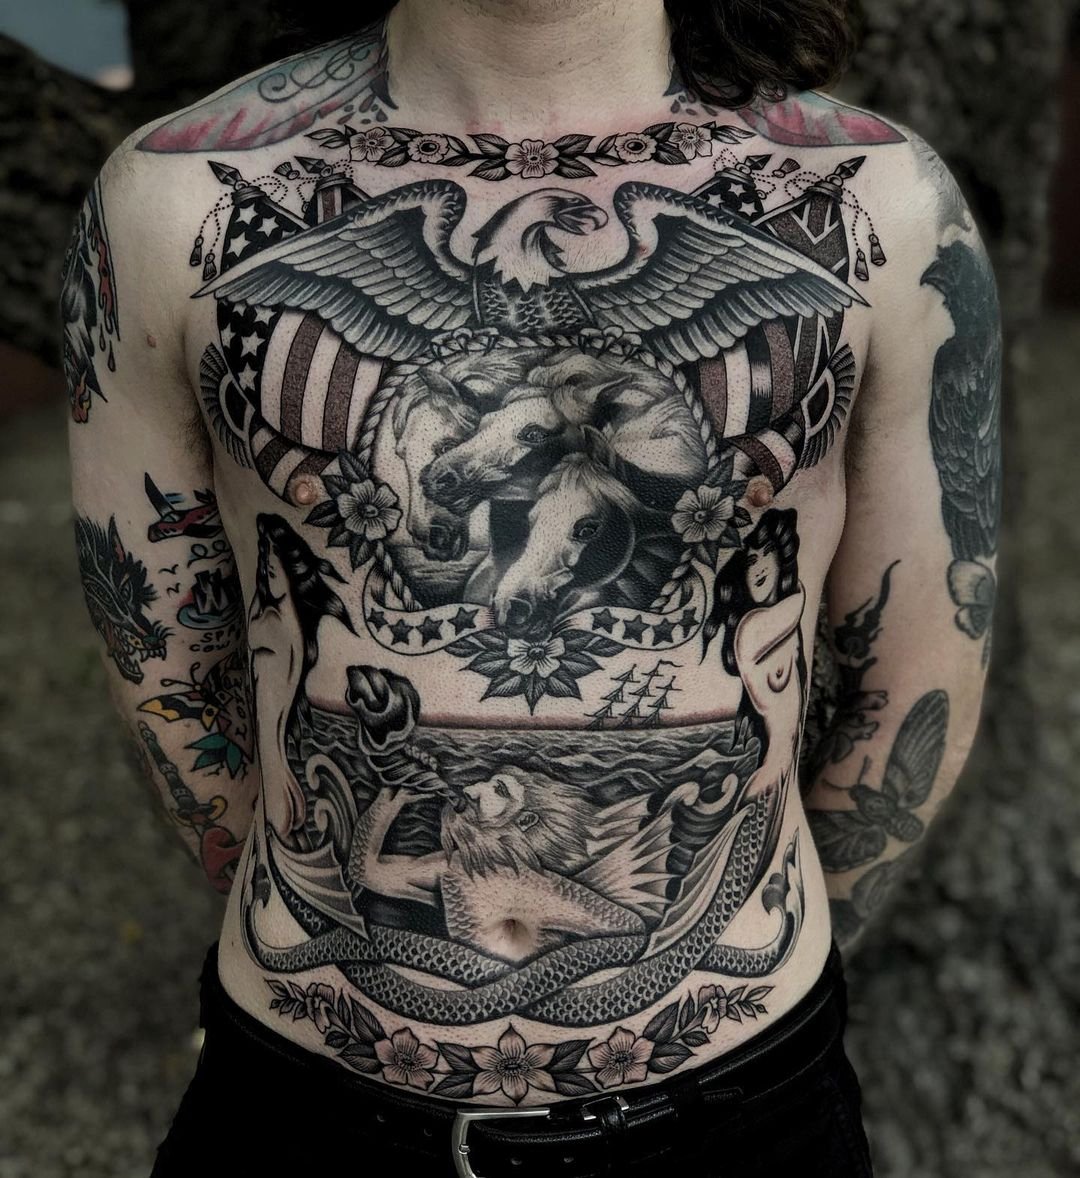 Cheyenne Tattoo Artist: Jens Bergström | Old ✕ New School Tattoos